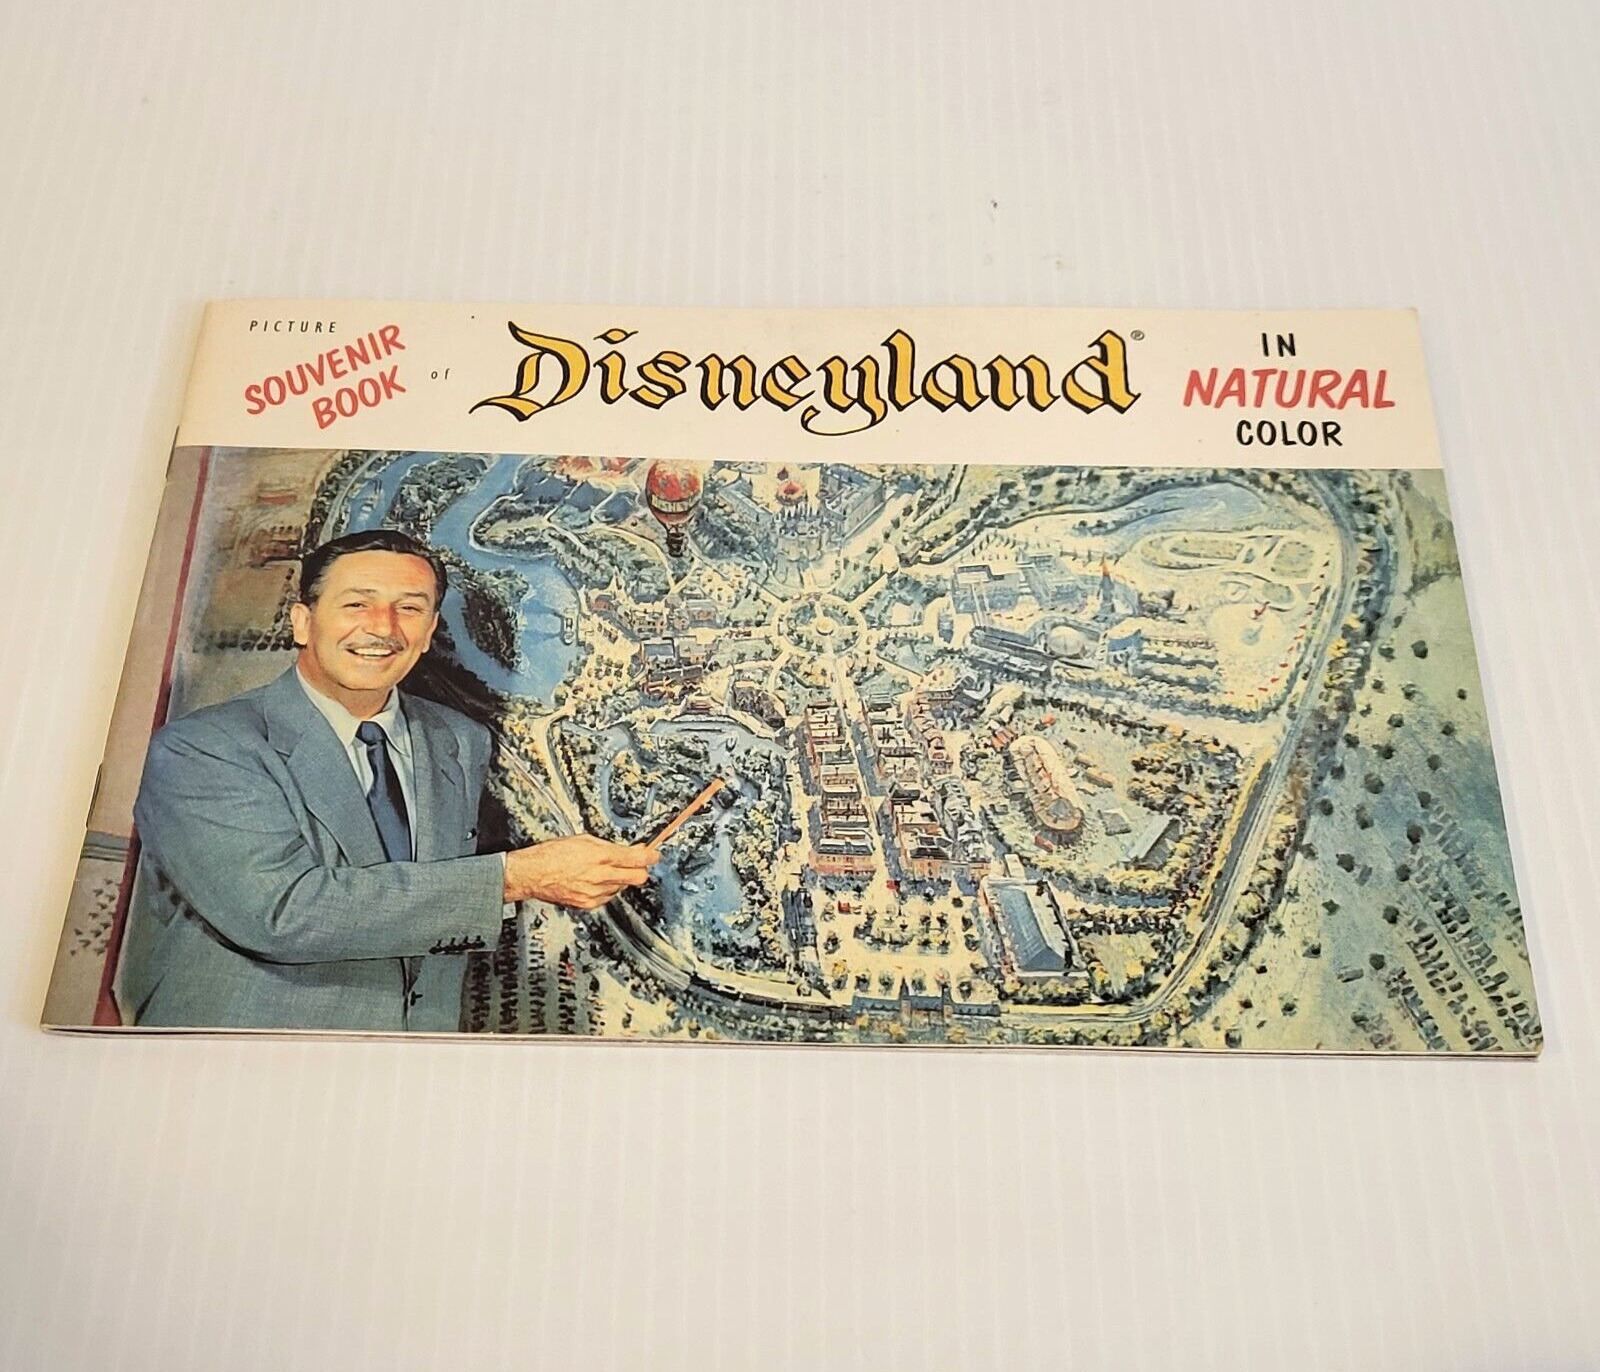 1955 Souvenir Guidebook of Disneyland In Natural Color 50th Edition Copy 2005